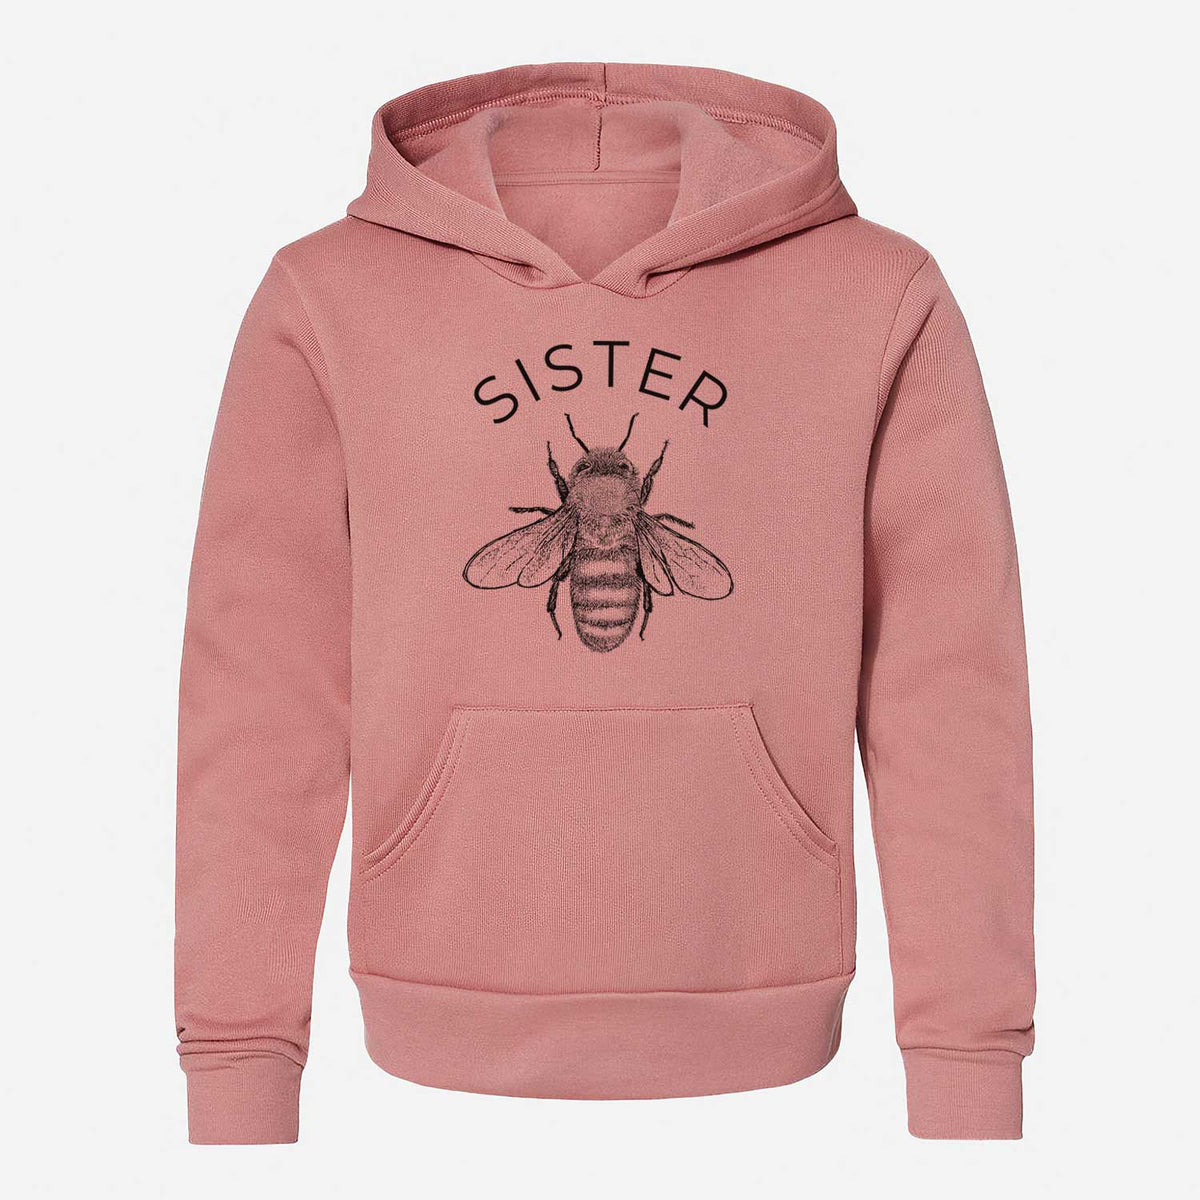 Sister Bee - Youth Hoodie Sweatshirt